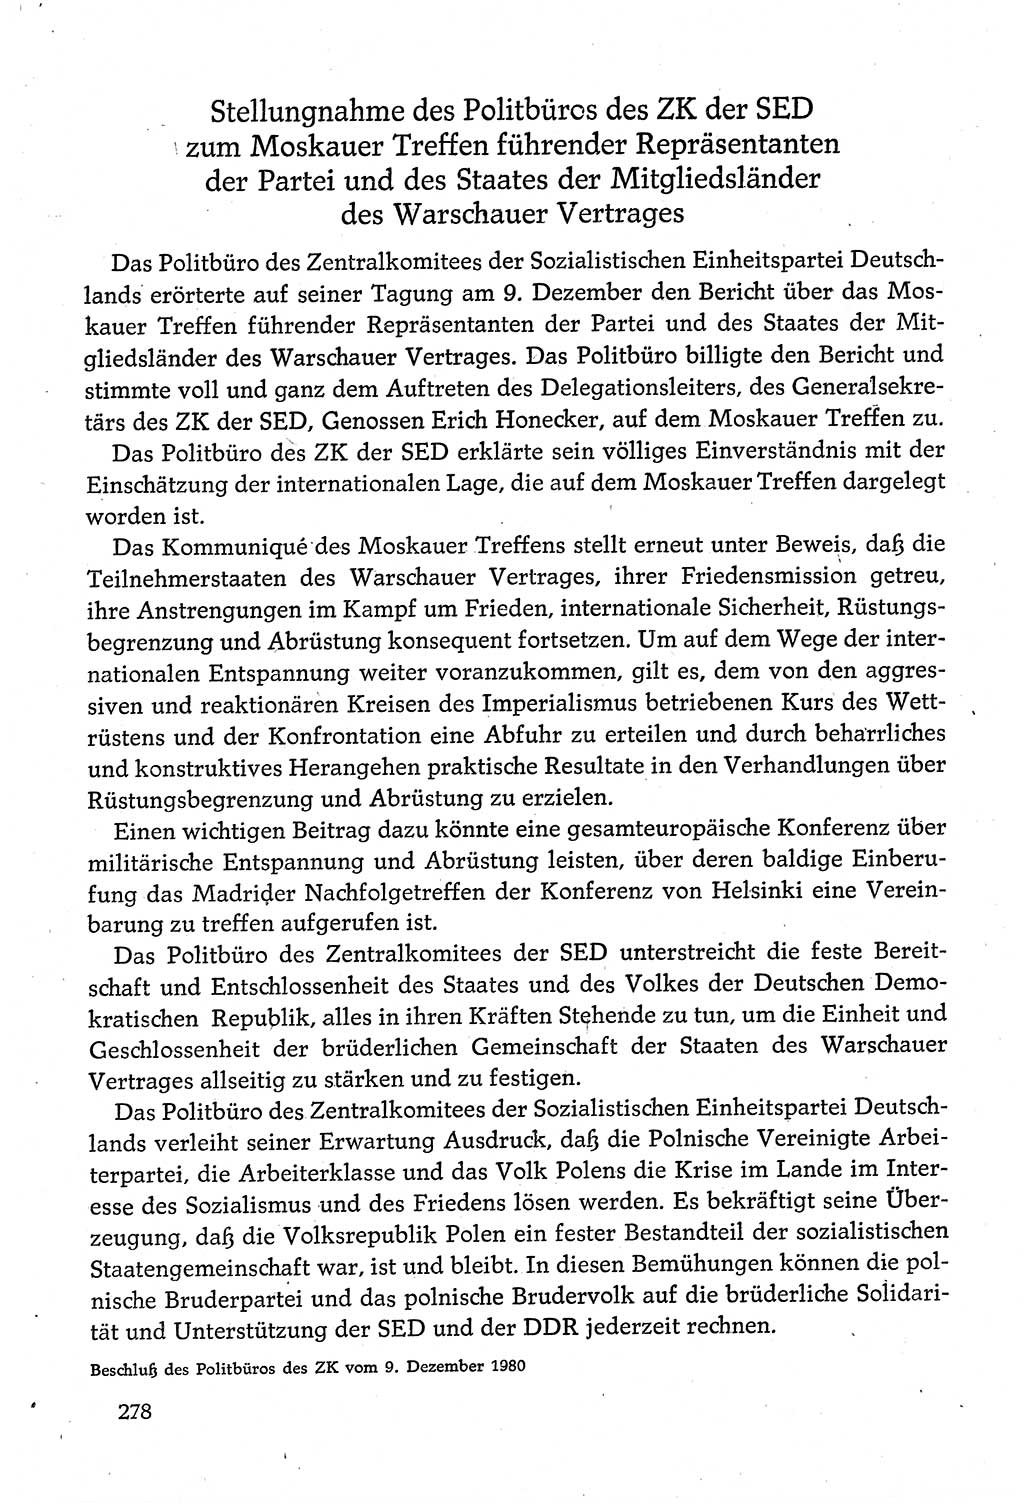 Dokumente der Sozialistischen Einheitspartei Deutschlands (SED) [Deutsche Demokratische Republik (DDR)] 1980-1981, Seite 278 (Dok. SED DDR 1980-1981, S. 278)